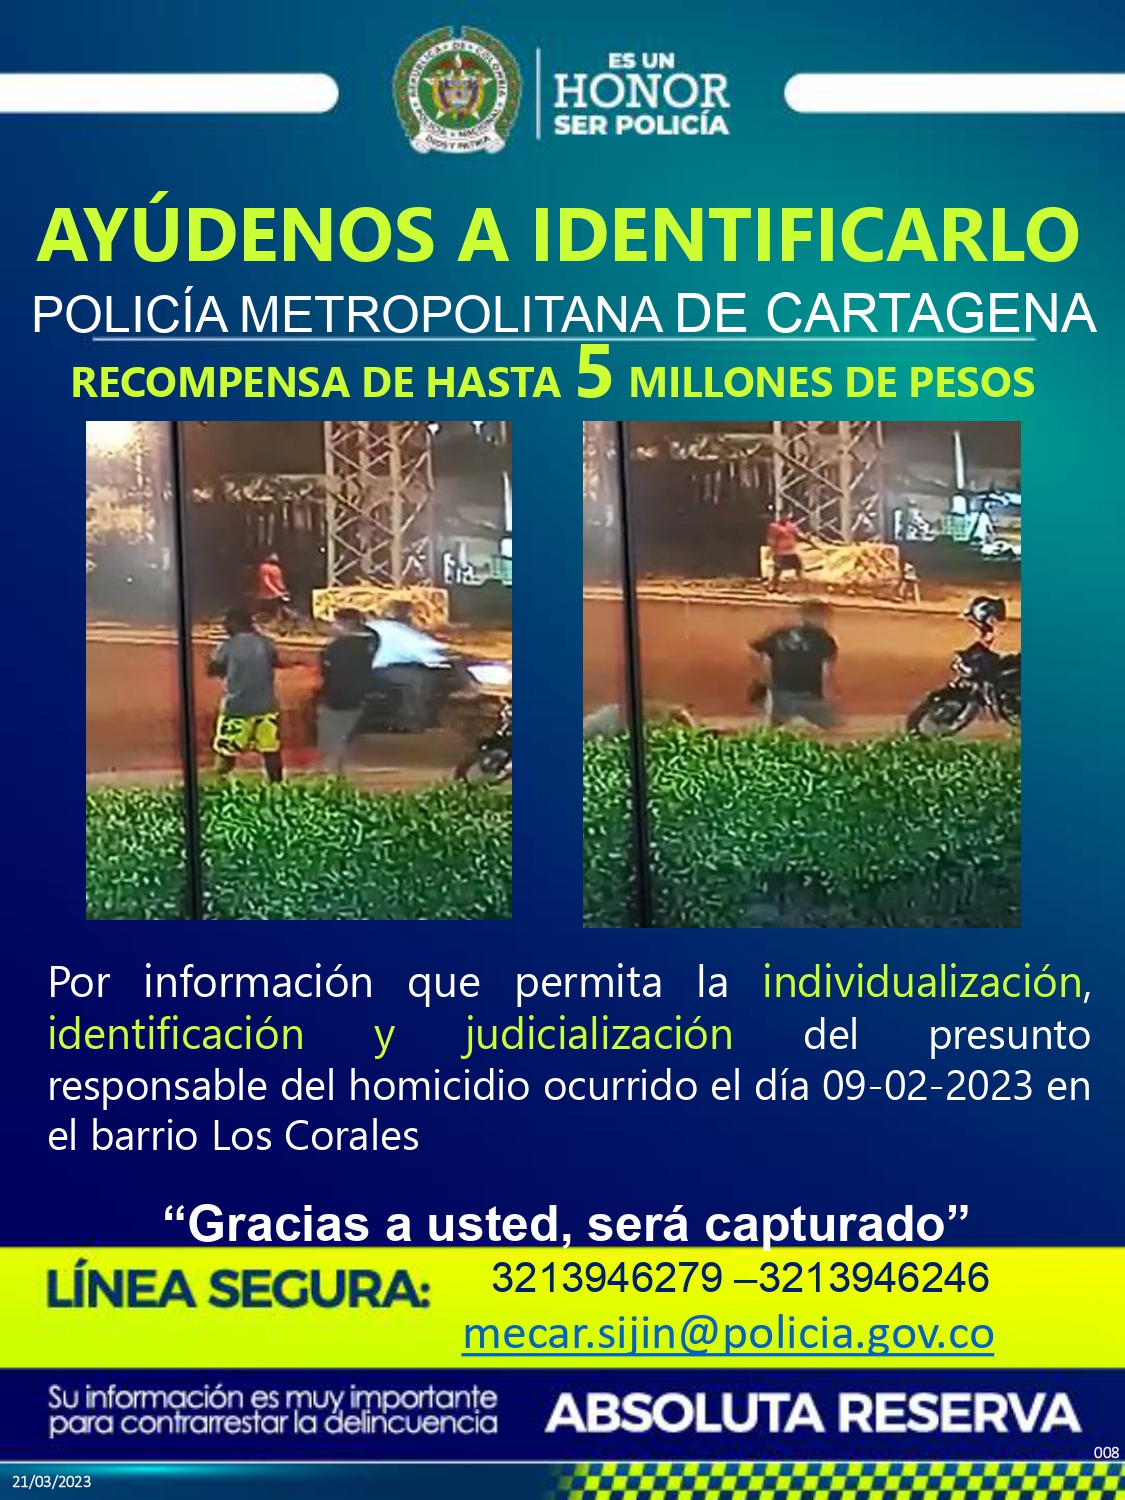 Otro de los carteles divulgados por la Policía de Cartagena